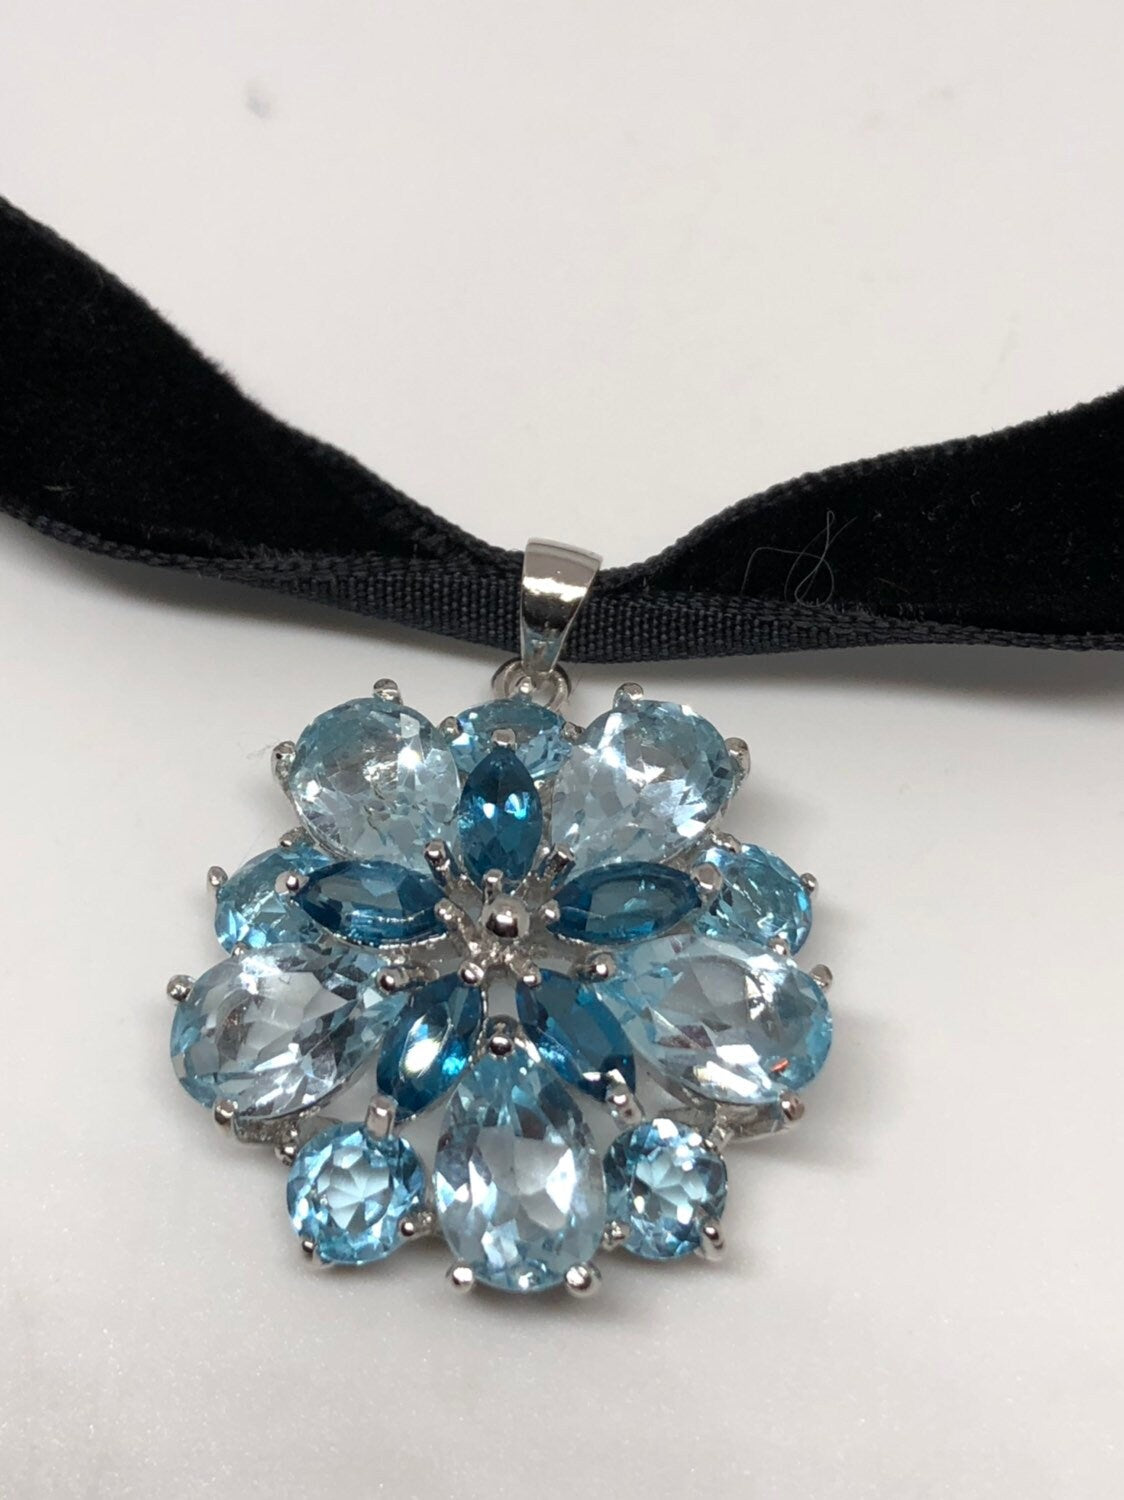 Vintage Genuine Deep Blue Topaz 925 Sterling Silver Necklace Pendant